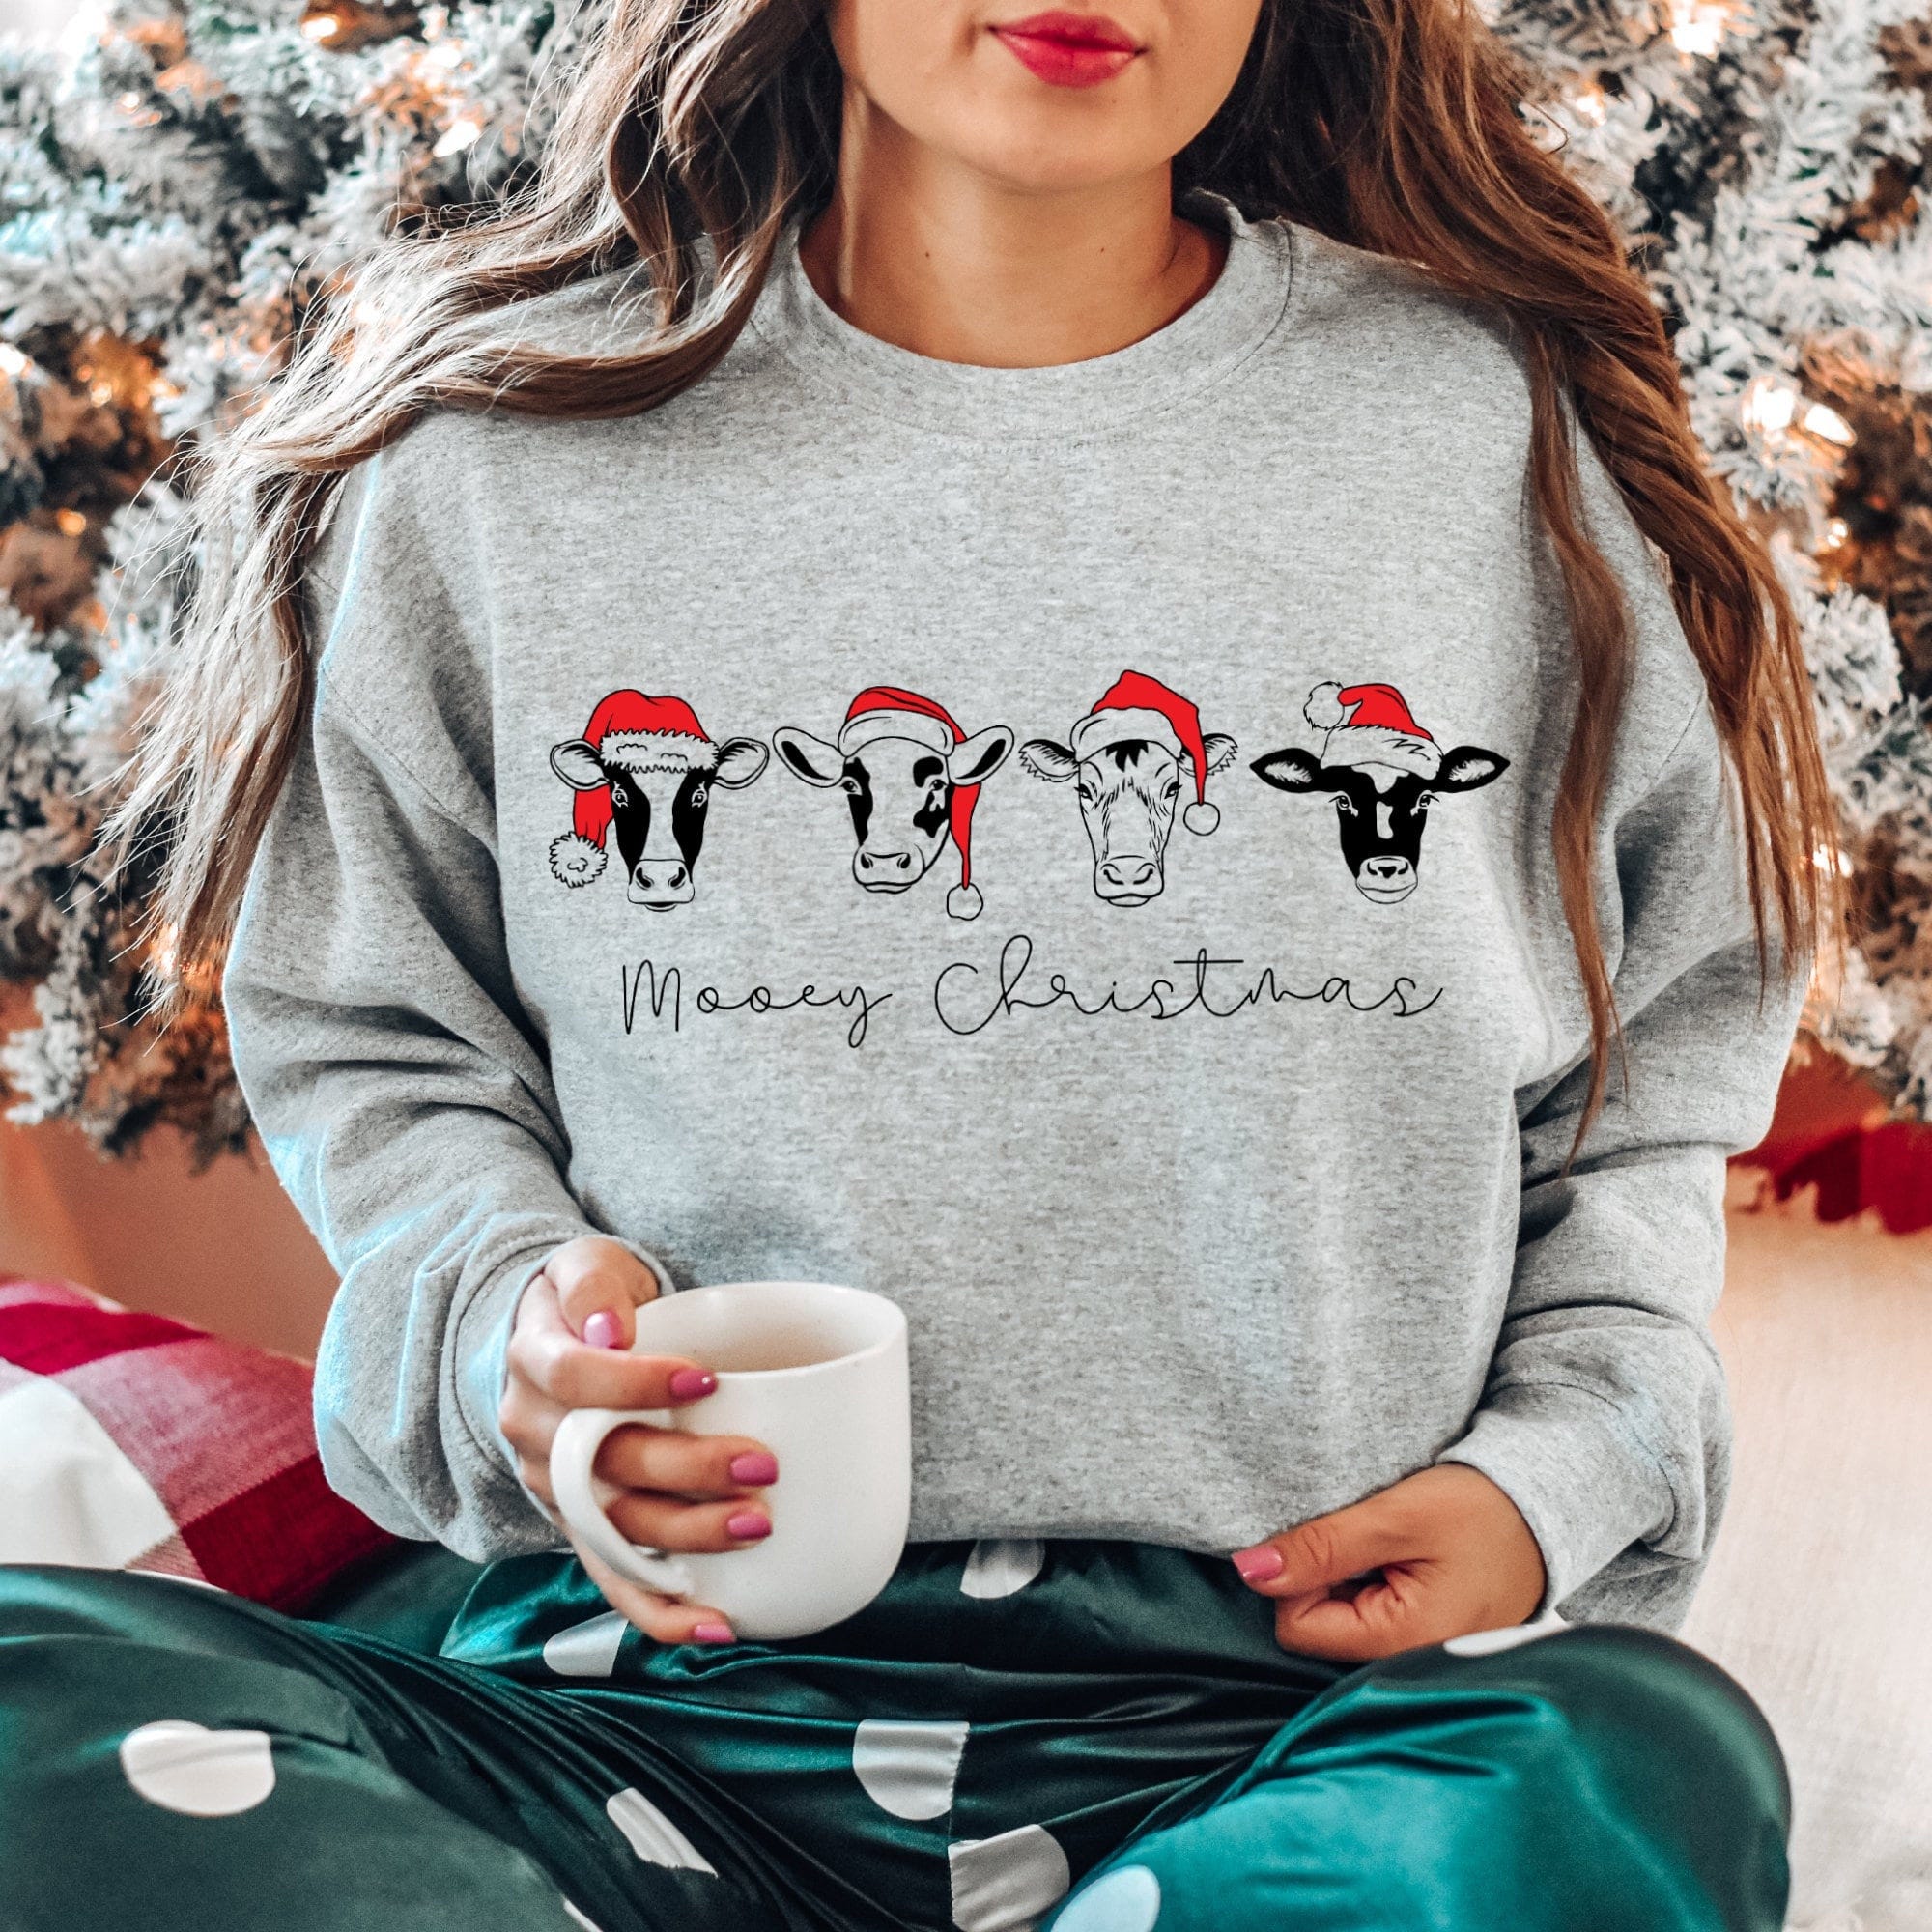 Mooey Christmas Sweatshirt, Cow Christmas Sweatshirt, Funny Cow Christmas Sweater,Farmer Christmas Gift,Country Xmas Sweatshirt, Farm Xmas